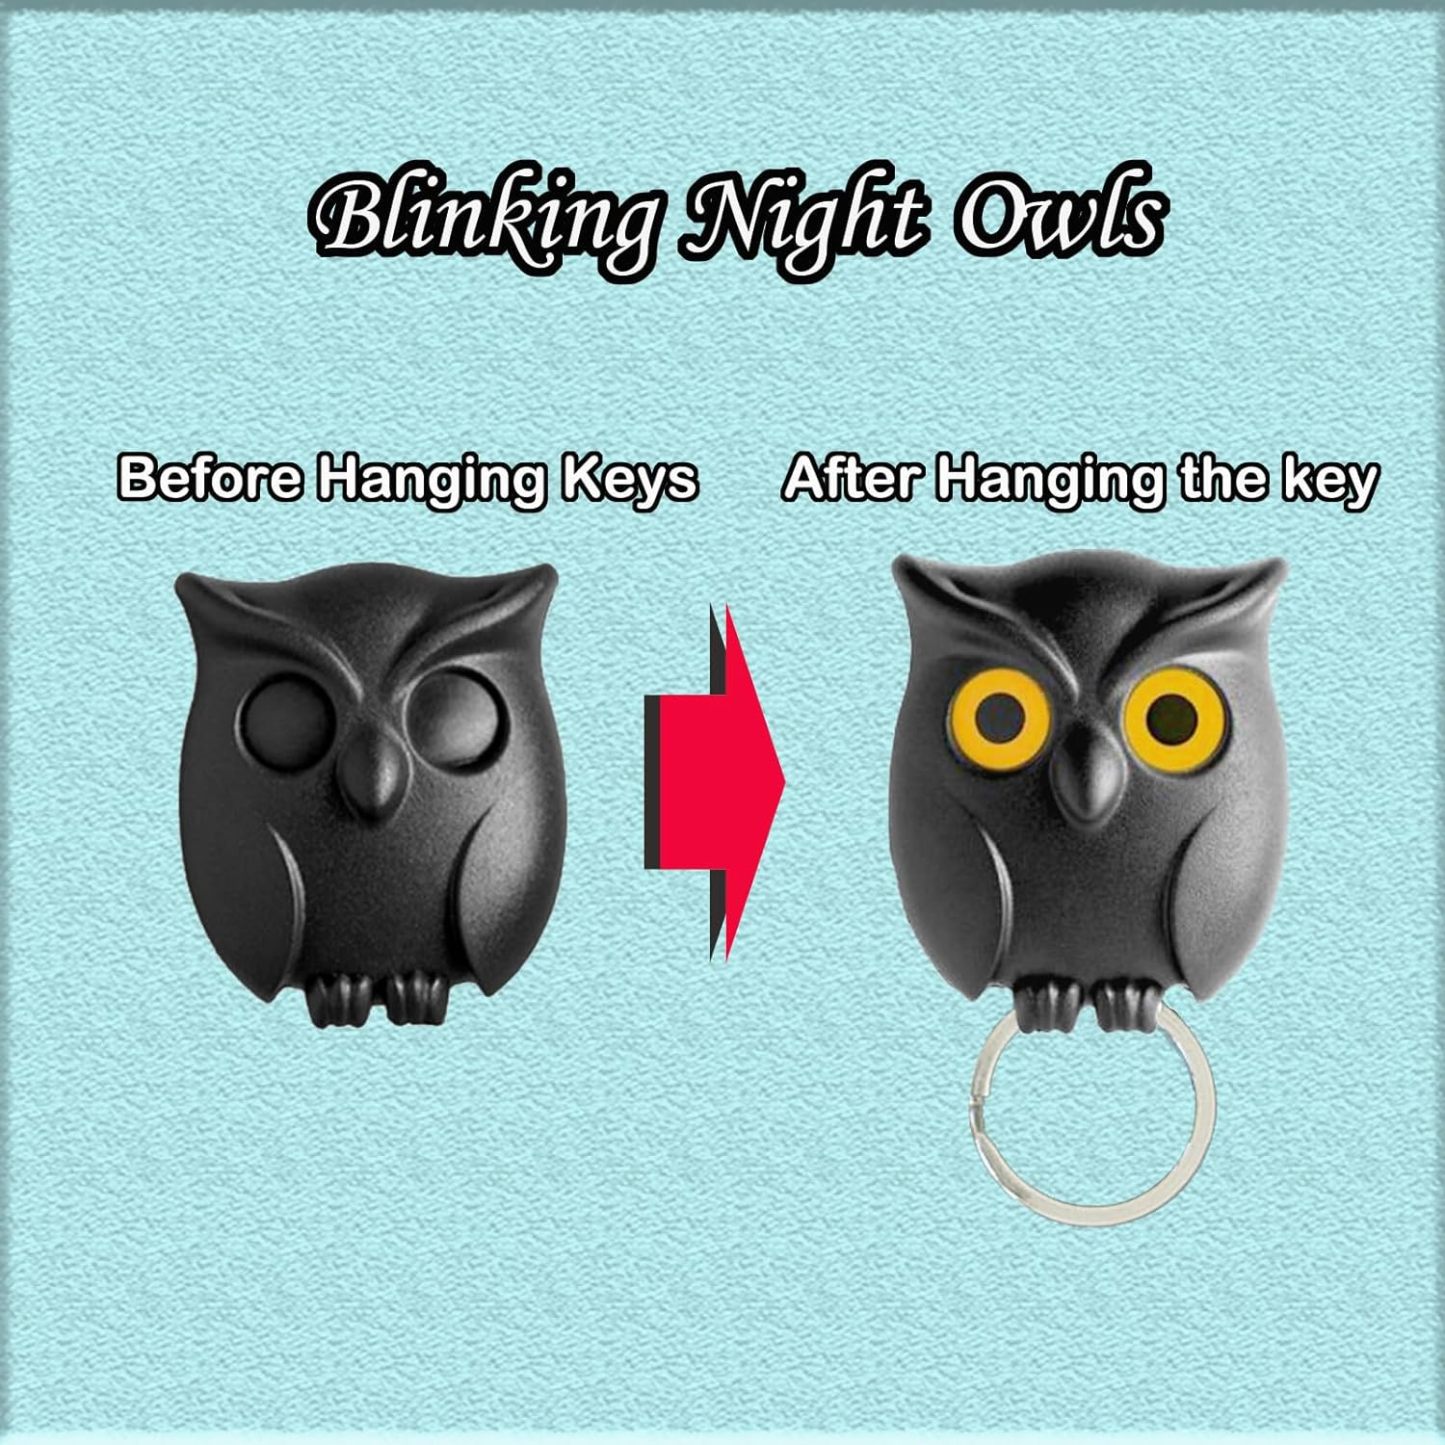 Blinking creative owl-shaped key holder